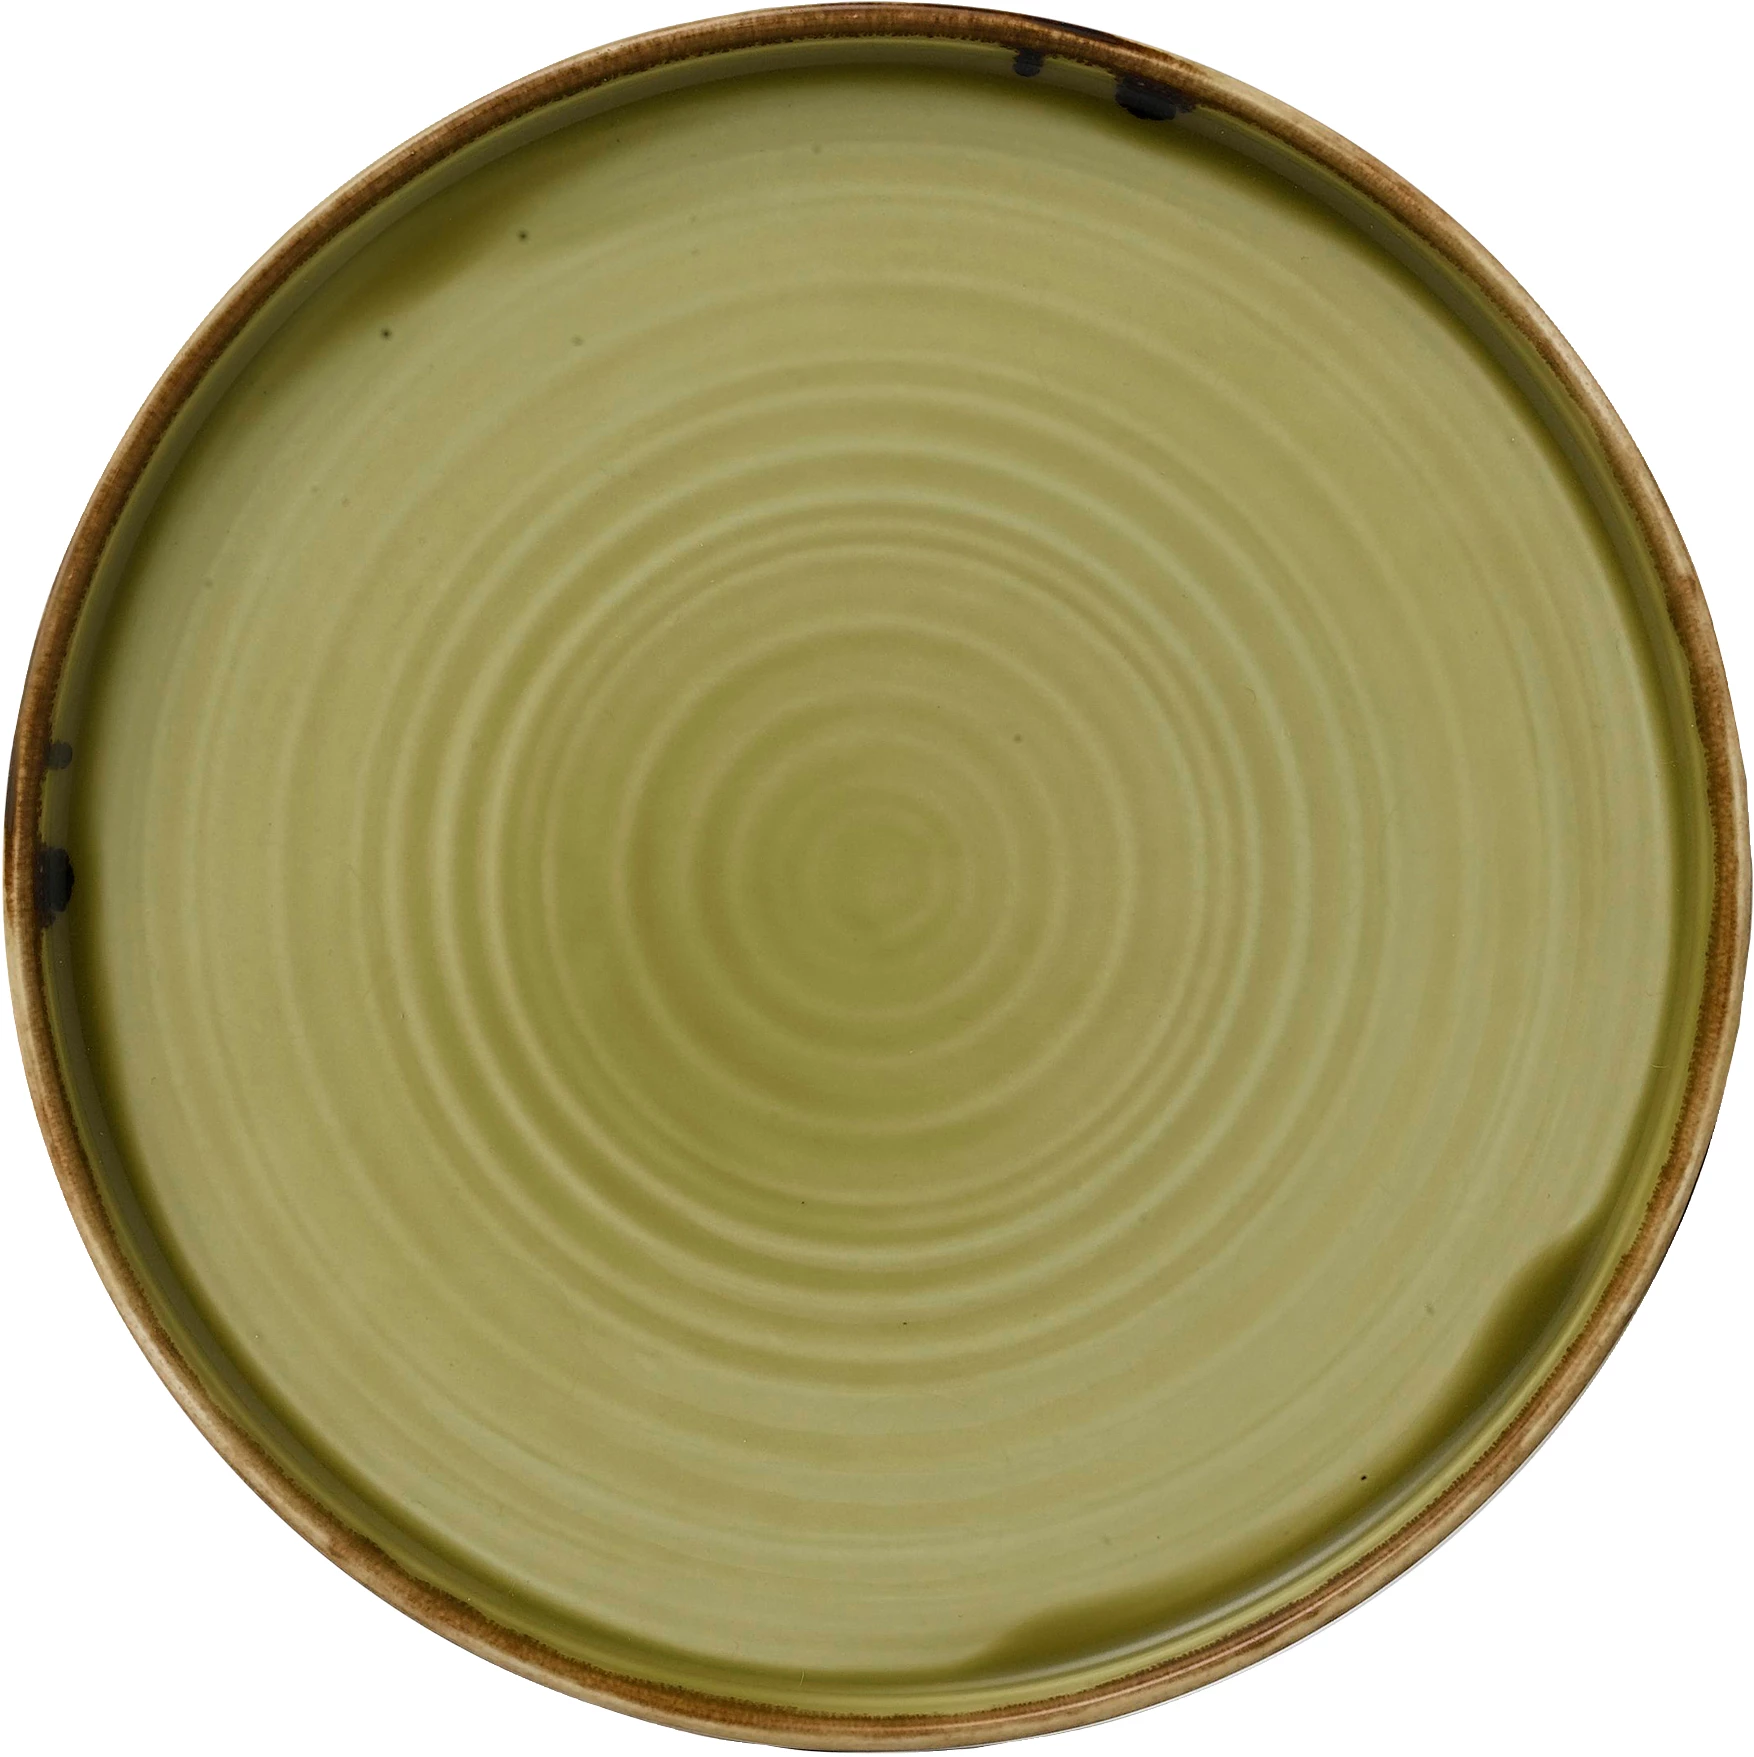 Dudson Harvest tallerken uden fane, flad, lys oliven, ø21 cm